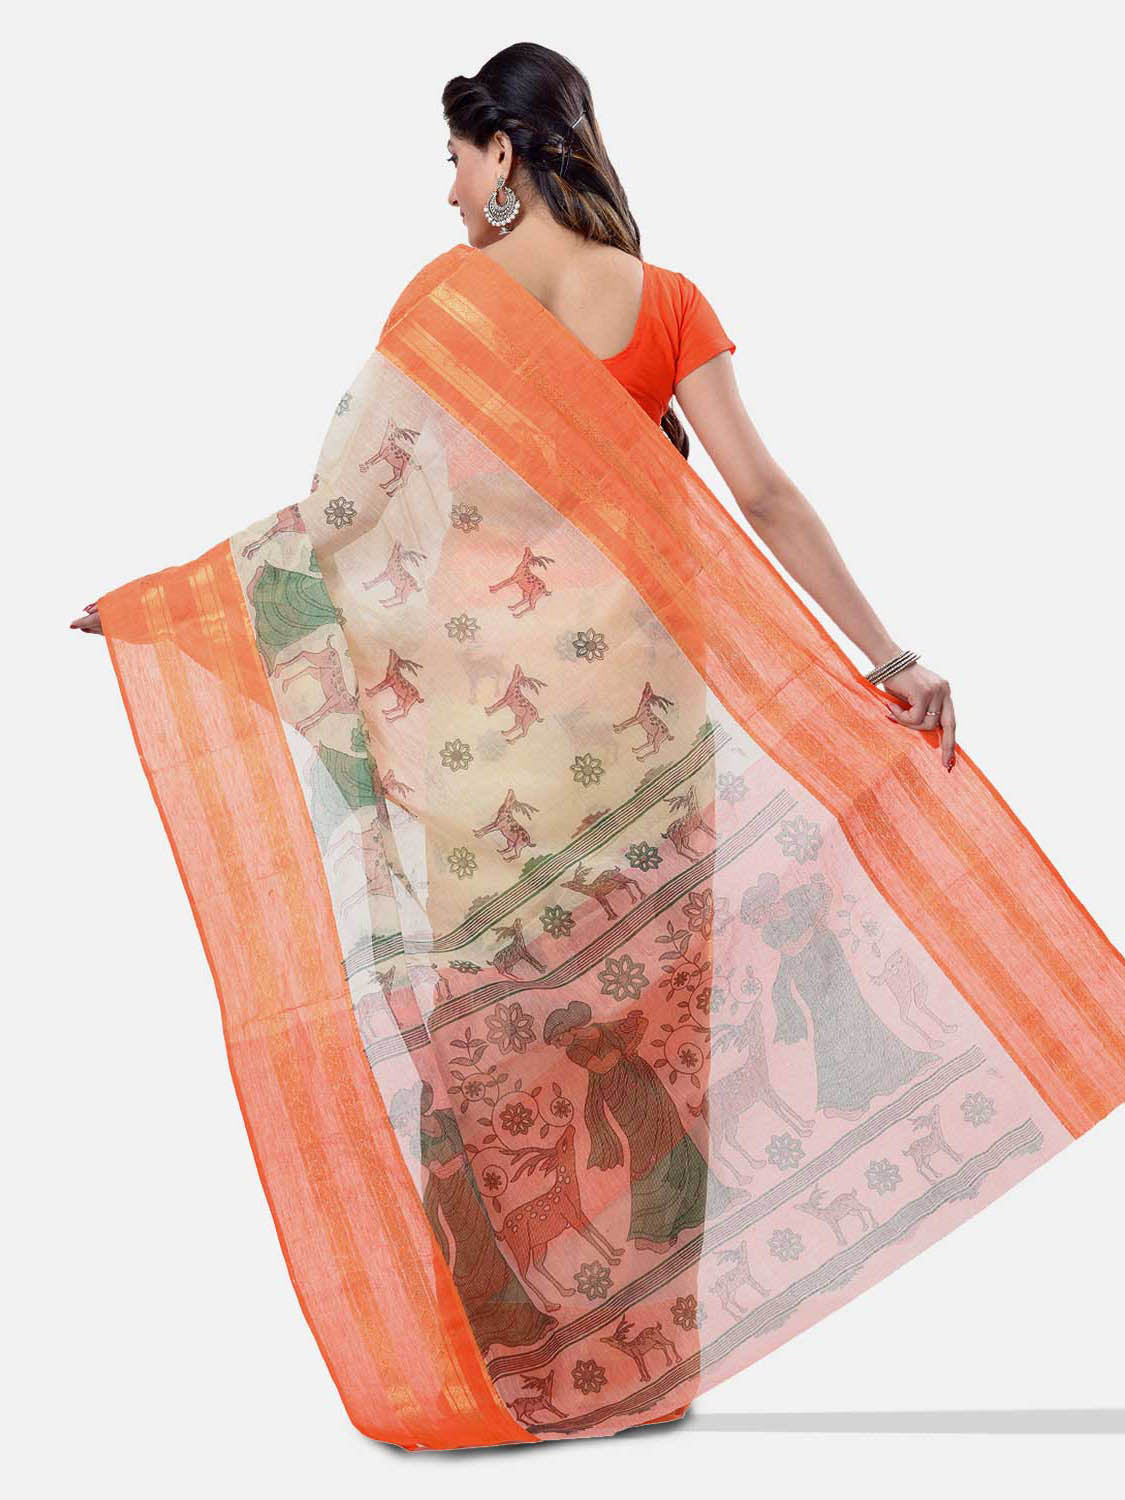 Women's Bengal Printed Sky Orange Cotton Tant Saree - Piyari Fashion